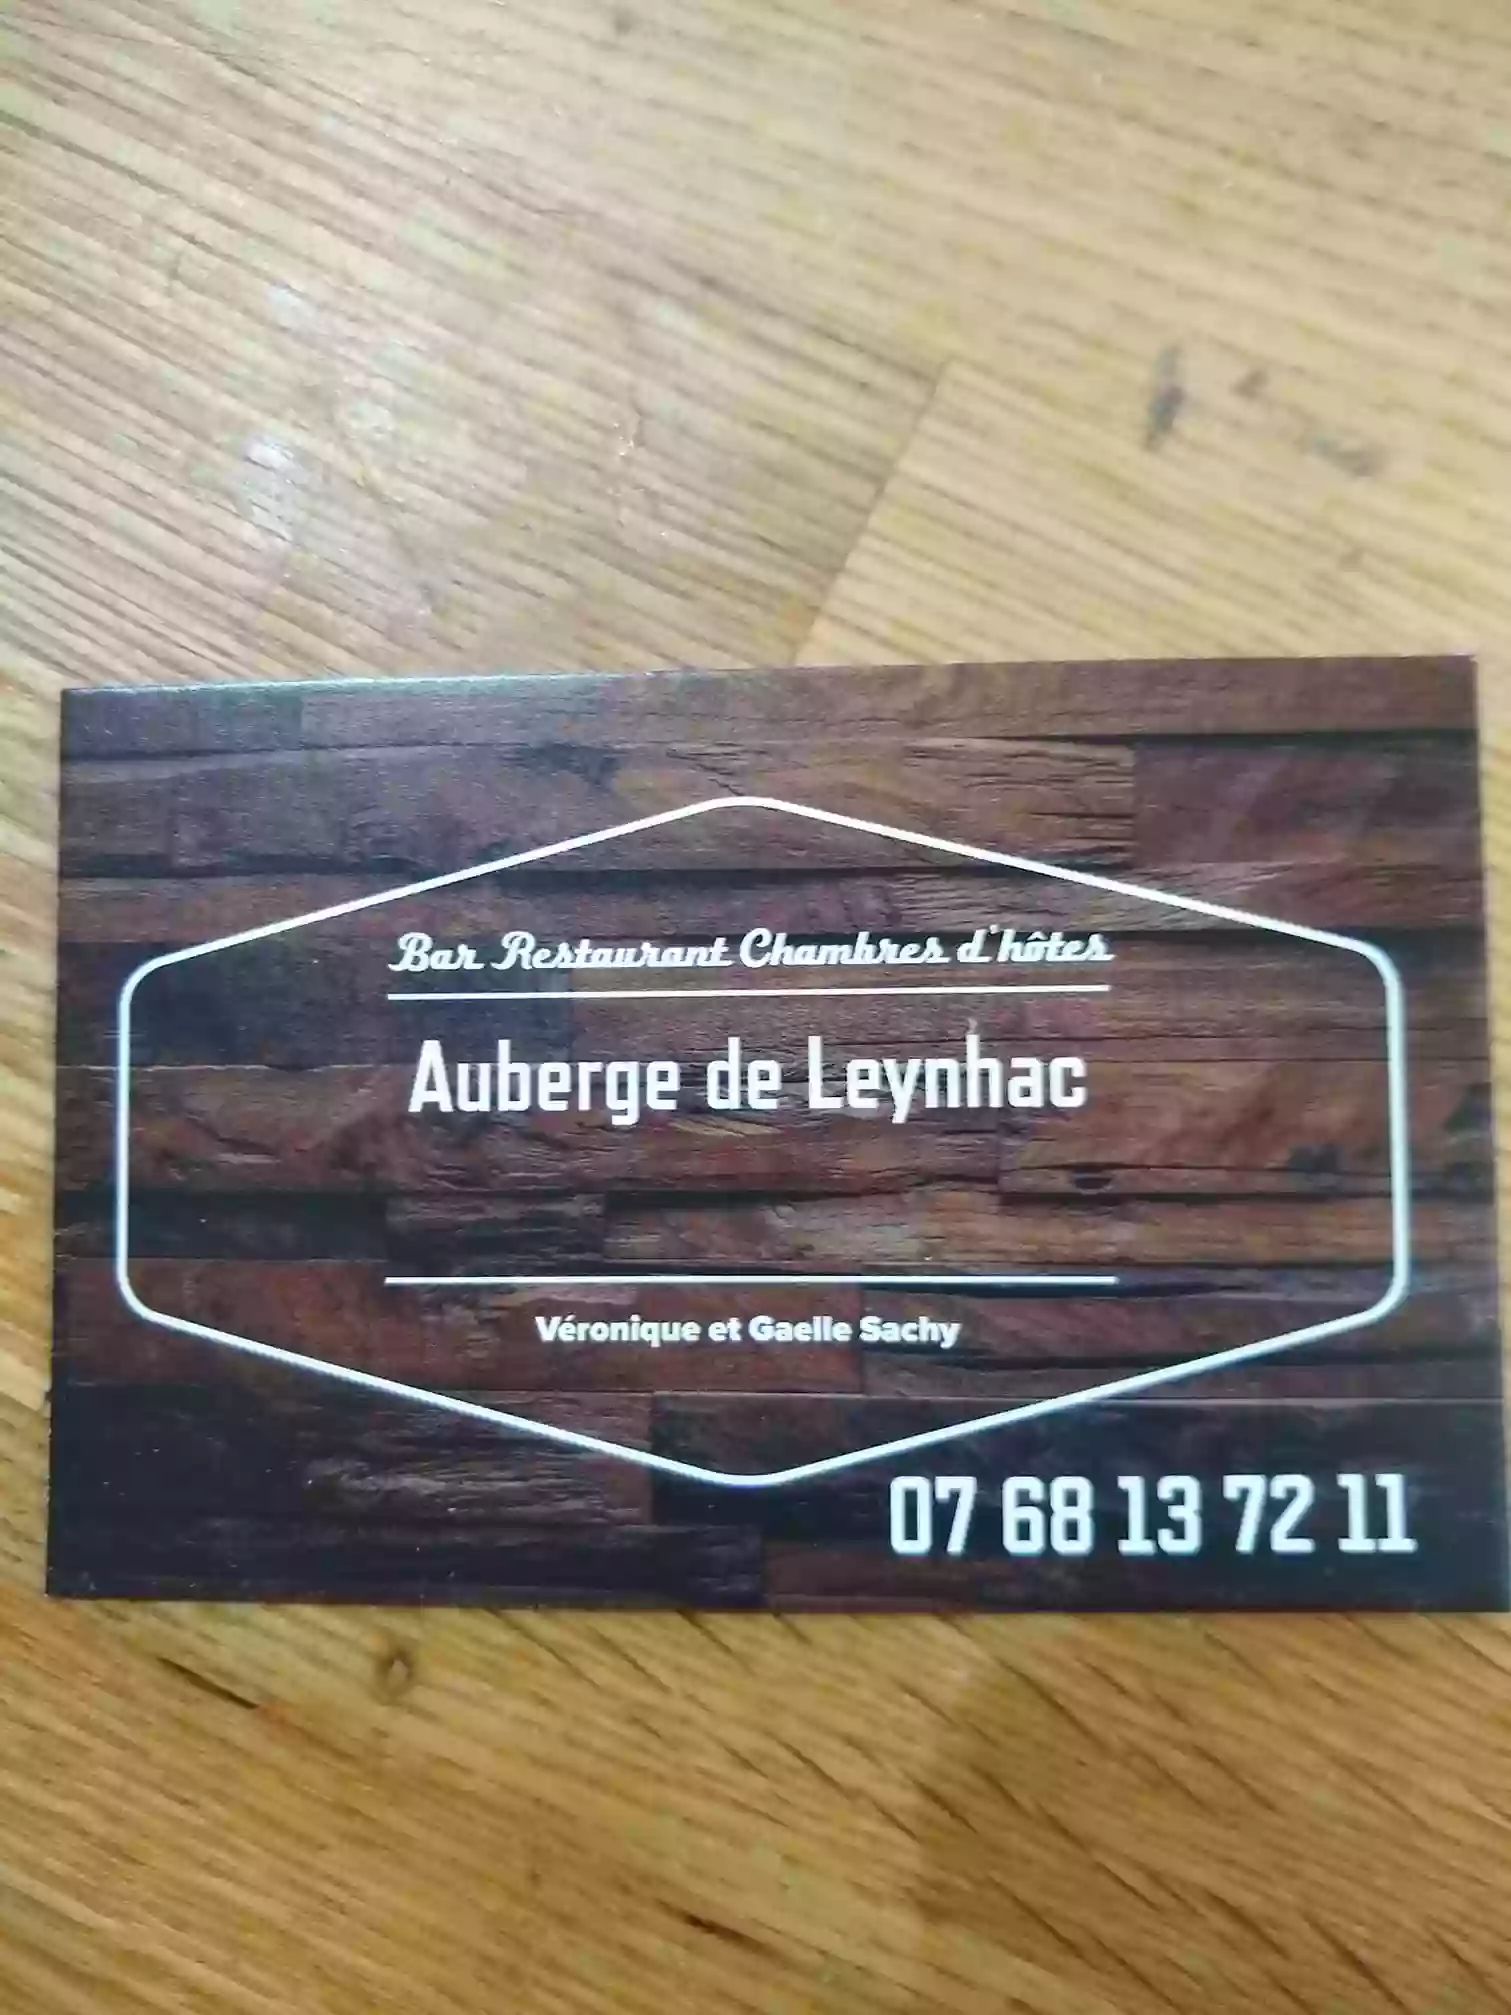 Auberge de Leynhac